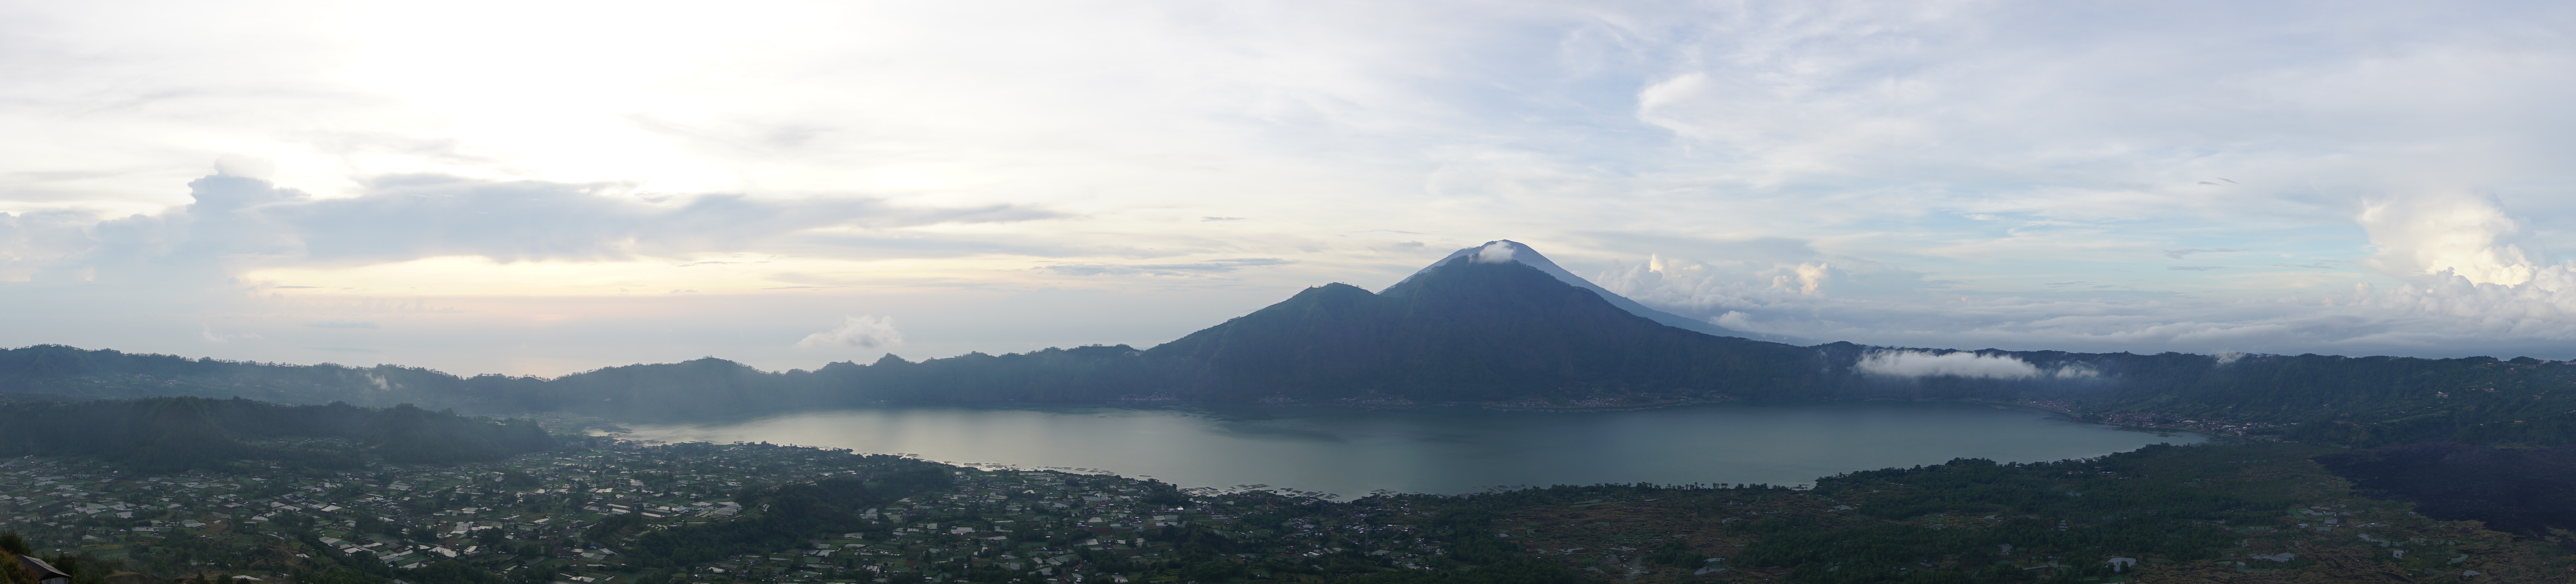 Panorama vom Gipfel des Mount Batur auf Bali, 30 Minuten nach Sonnenaufgang